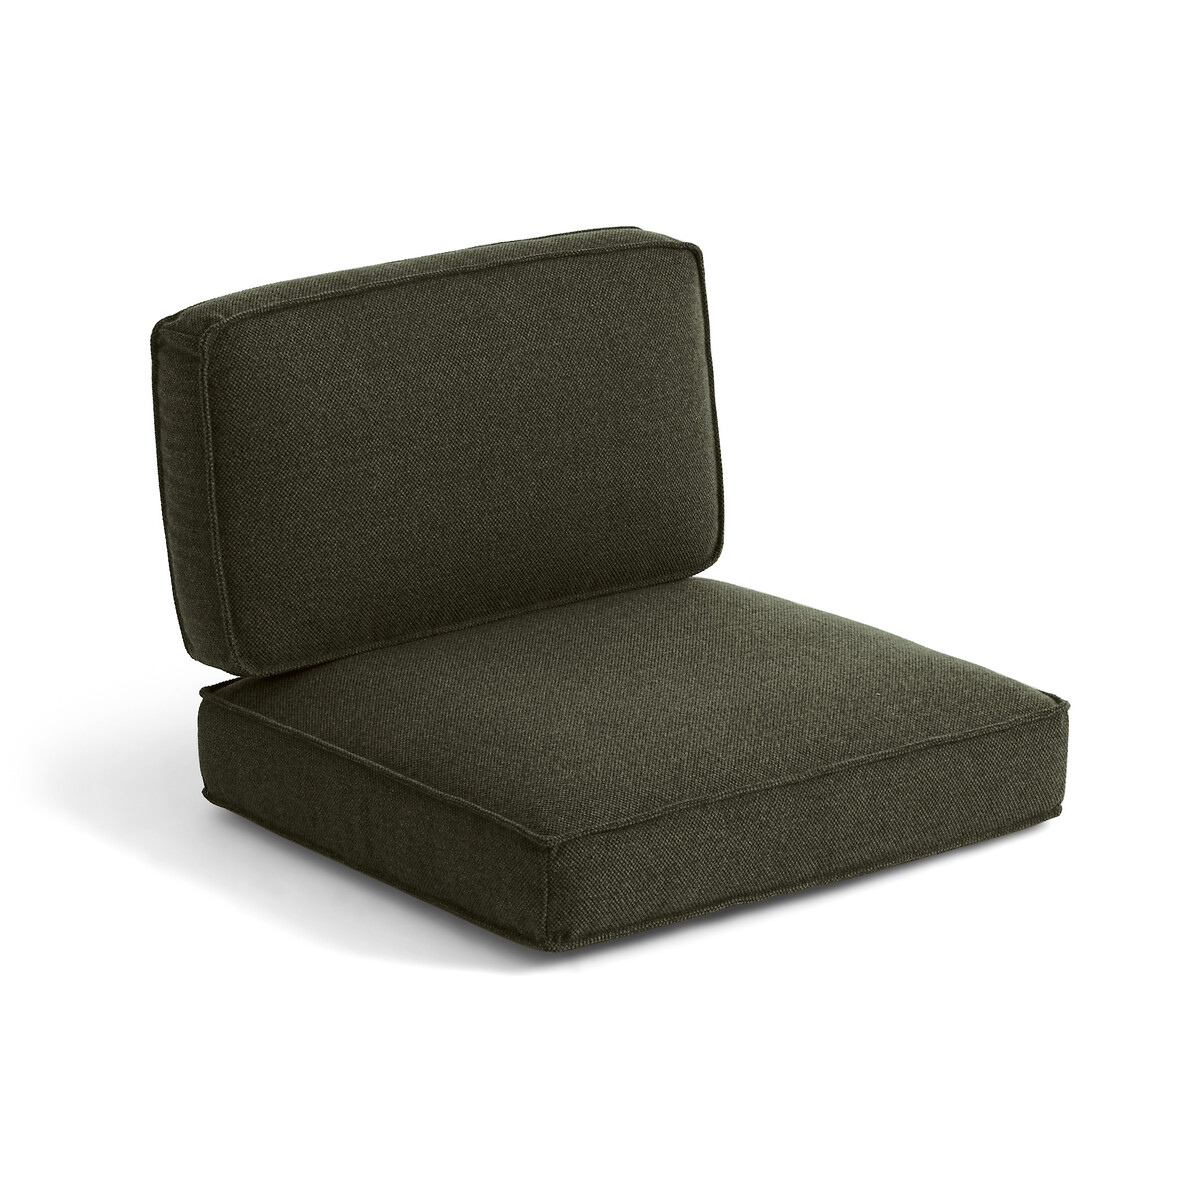 Подушки из плетеного узорчатого полиэстера для кресла Dilma единый размер зеленый